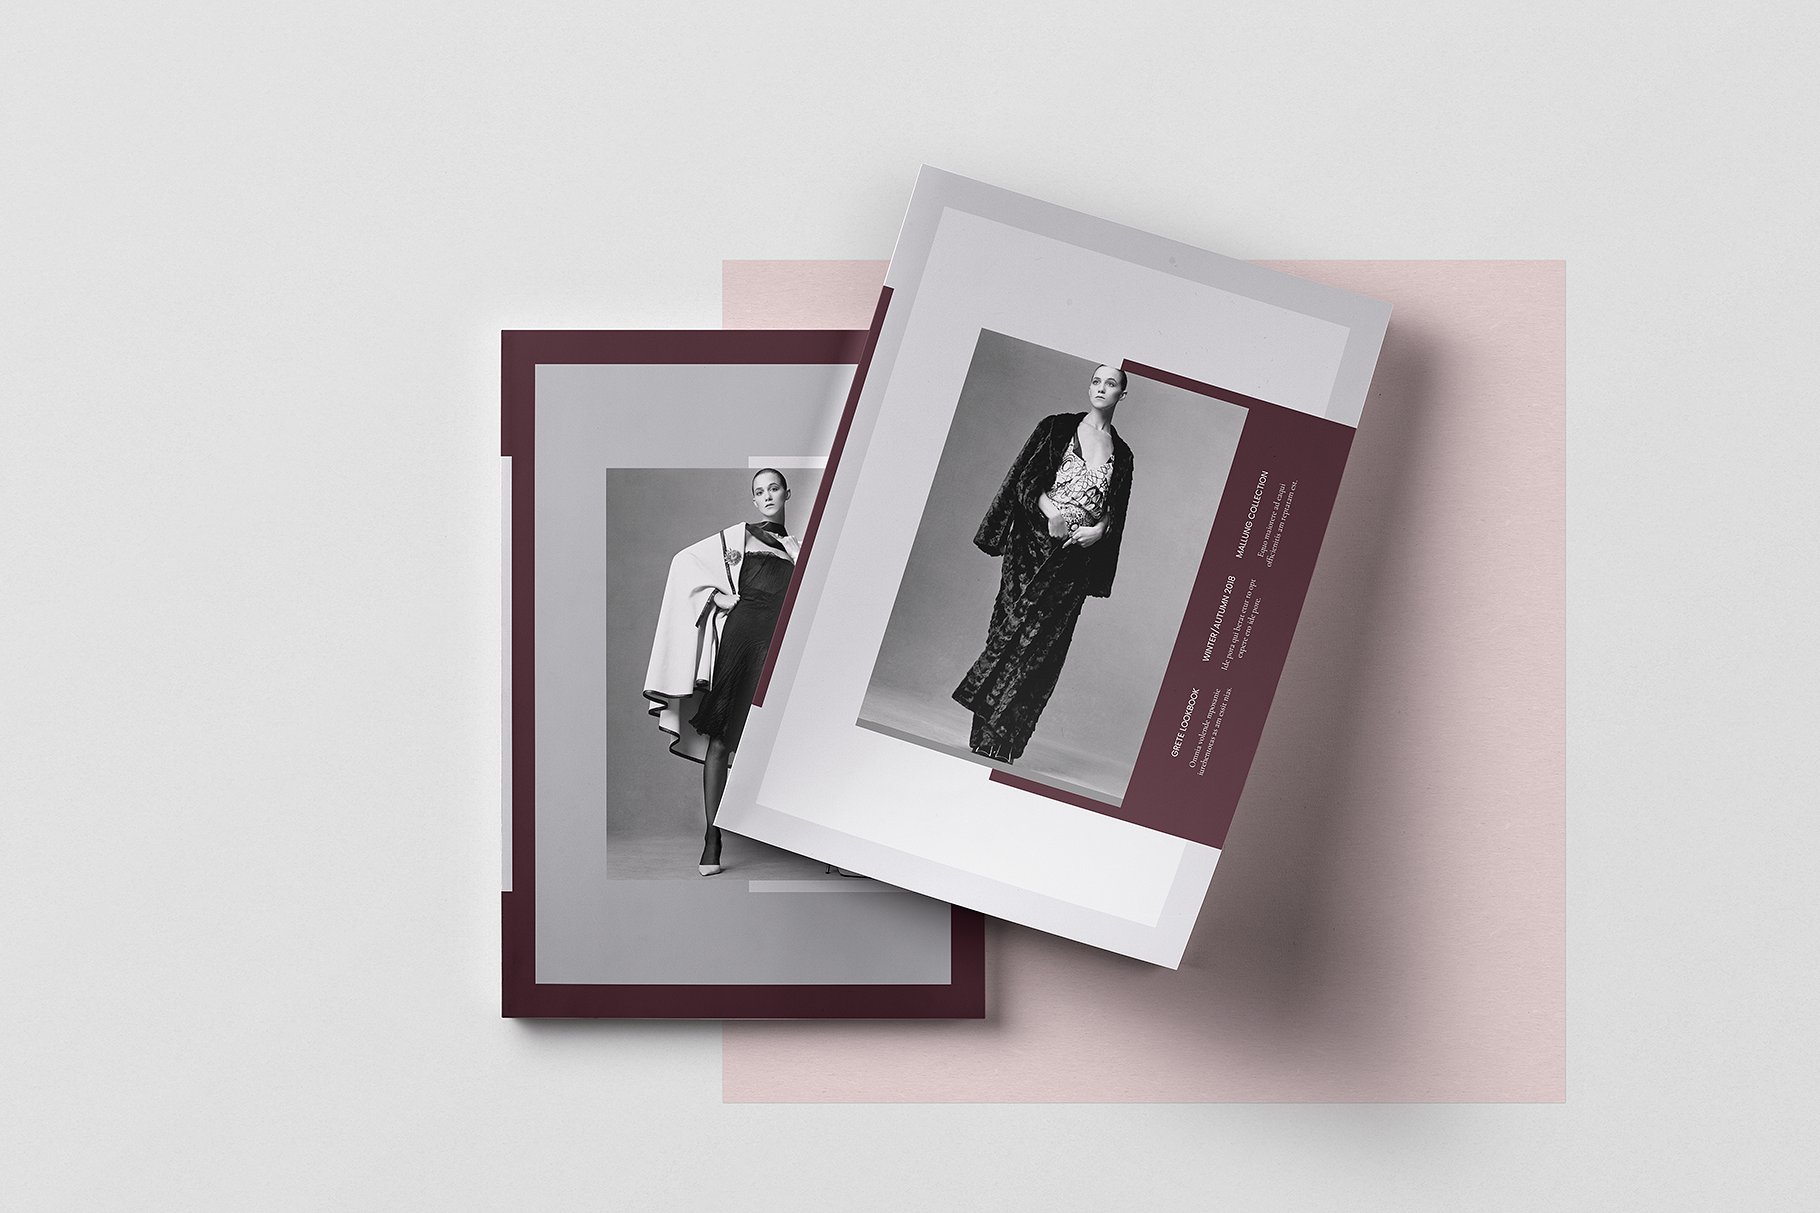 时尚优雅的女性服装A4画册模板 Modern Elegant Women’s Clothing A4 Album Template插图